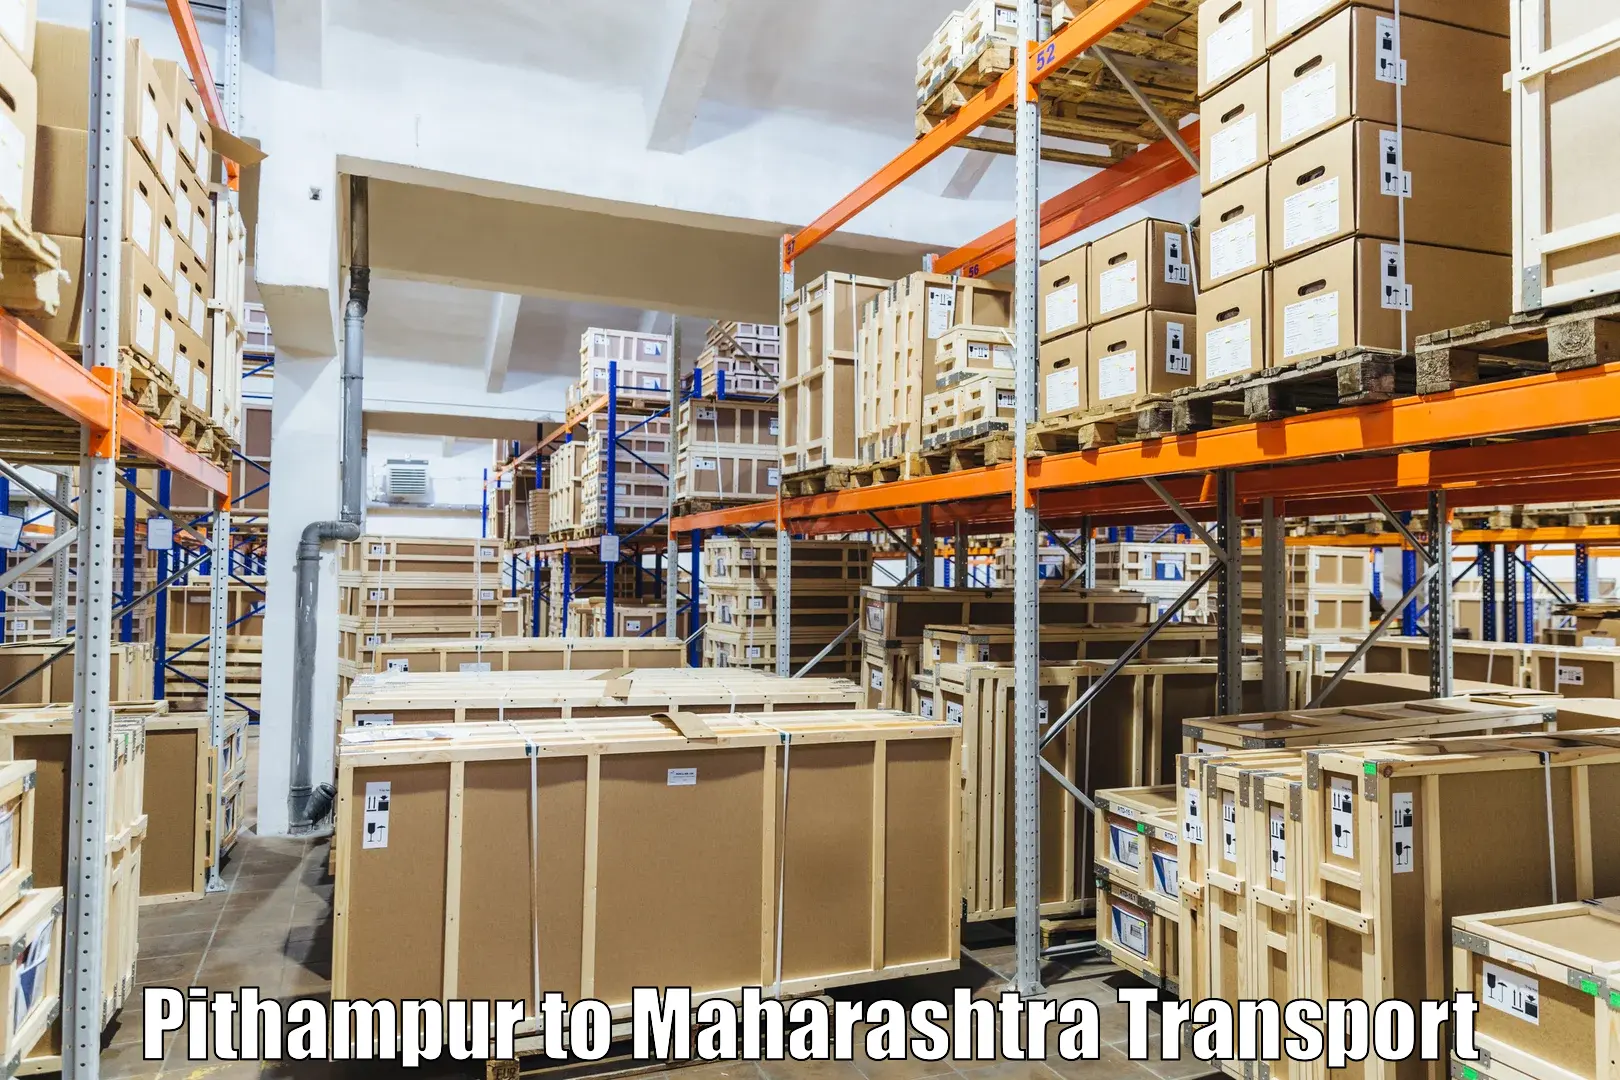 Land transport services Pithampur to Patan Satara